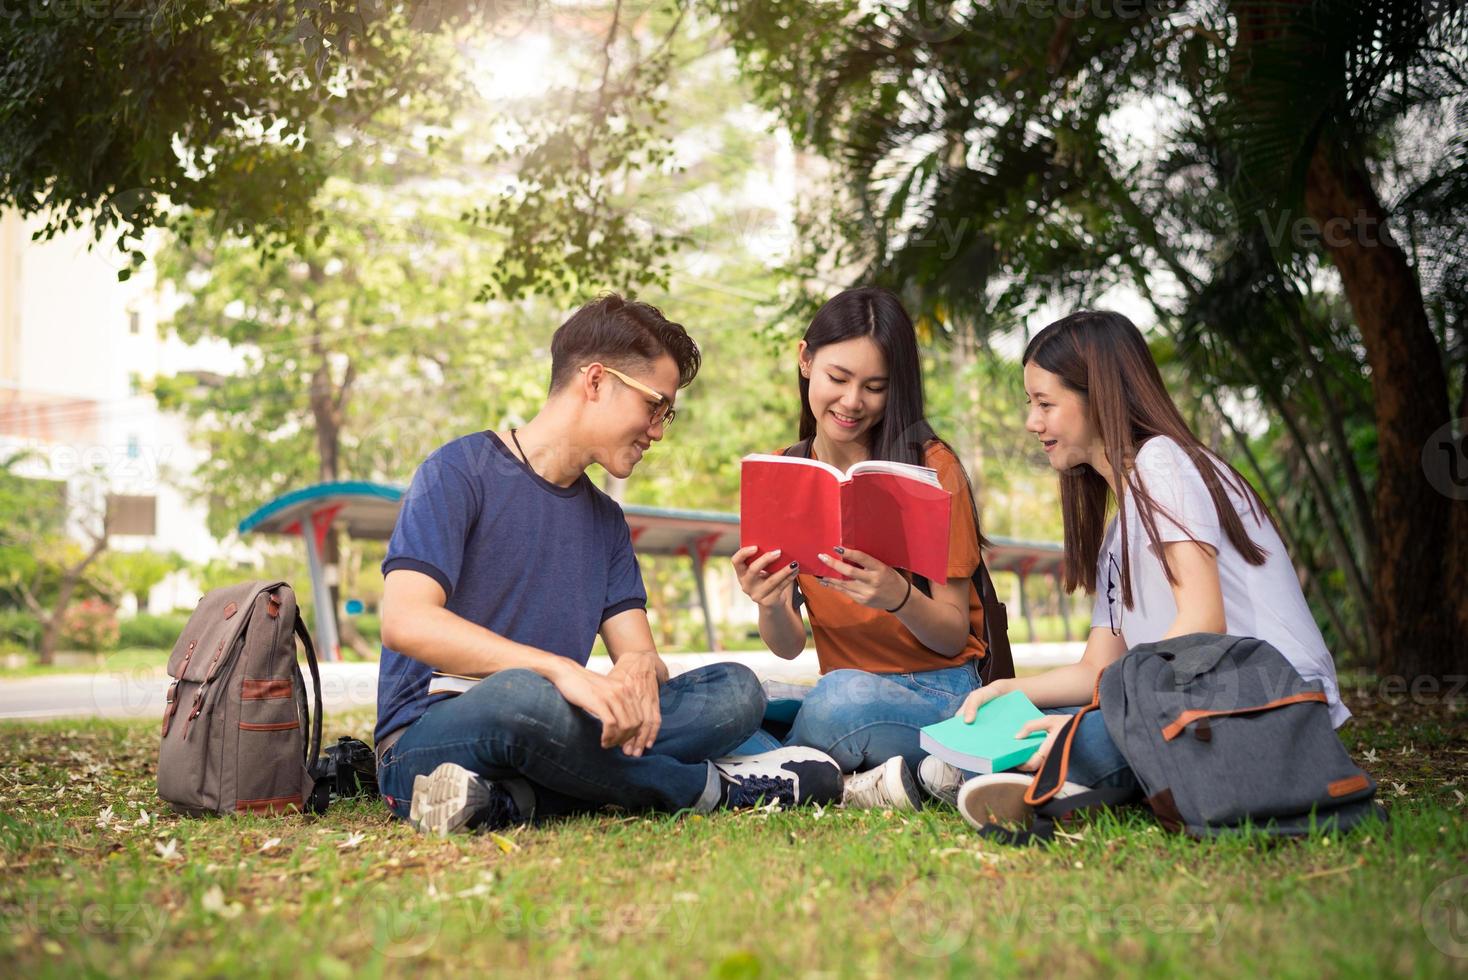 grupp asiatiska högskolestudenter som läser böcker och undervisar specialklass för tentamen på gräsplan utomhus. lycka och utbildning inlärningskoncept. tillbaka till skolan koncept. tonåring och människor tema foto